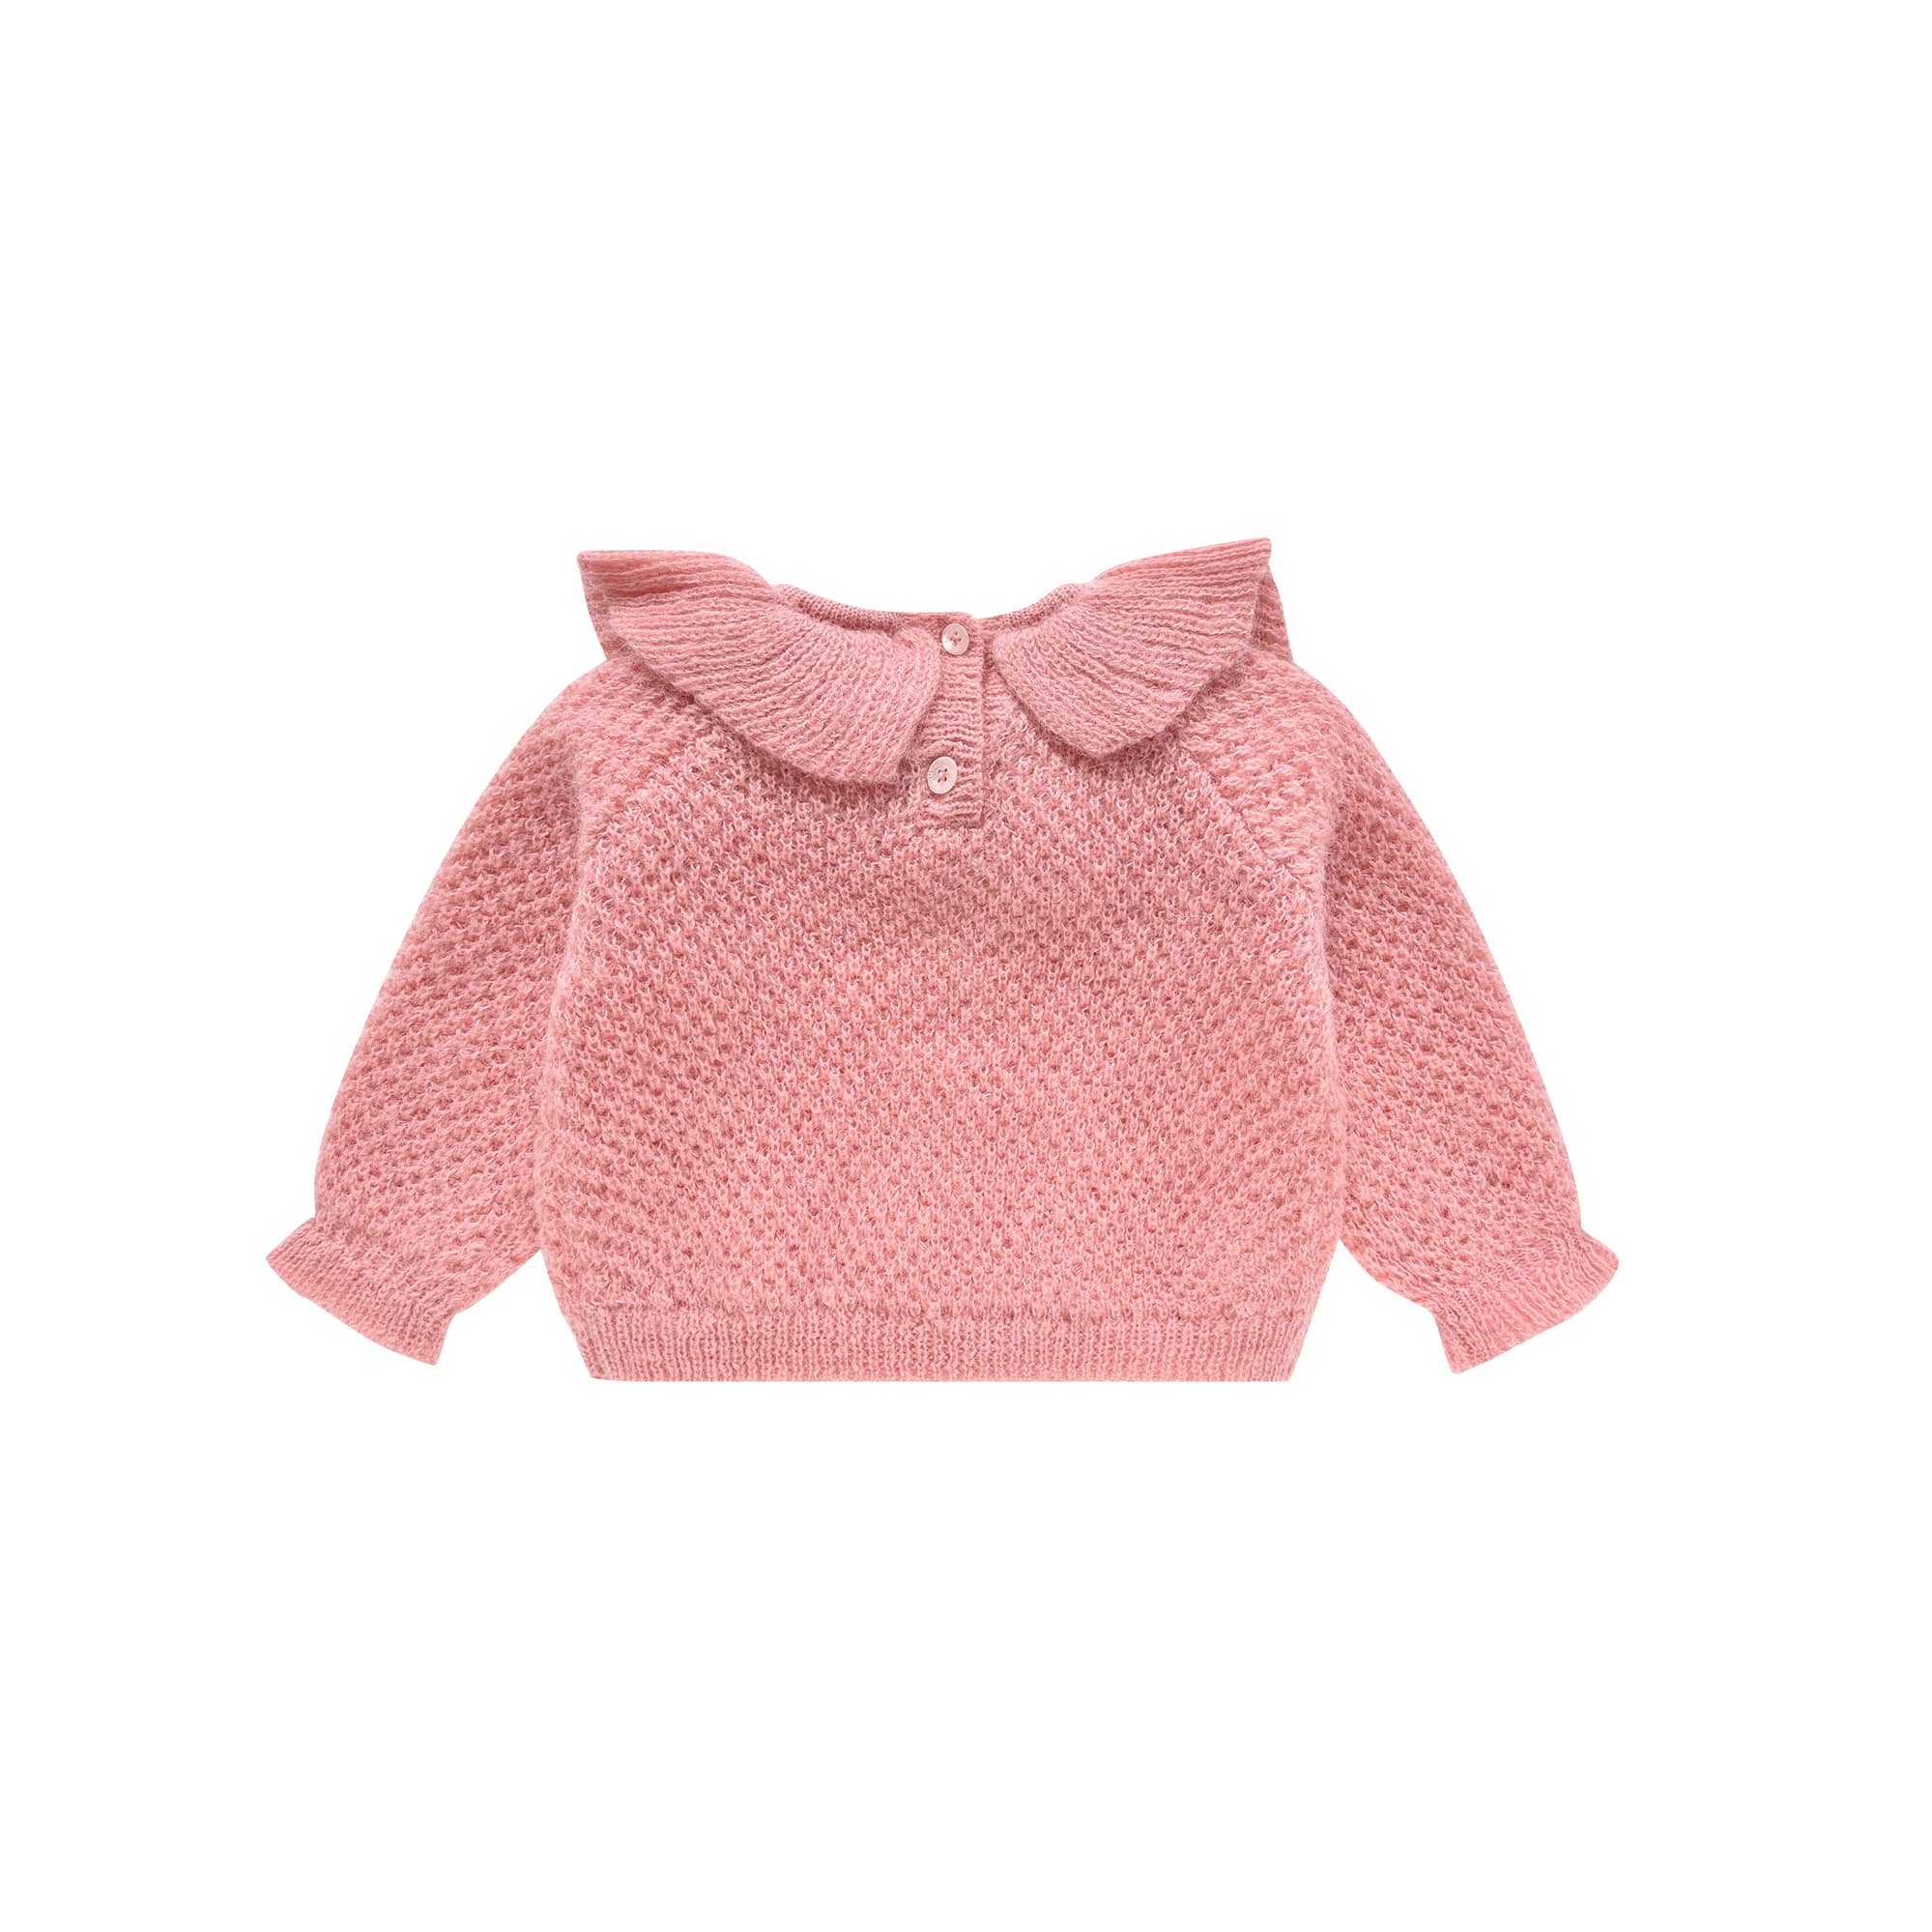 Girls Pink Ruffled Knit Sweater